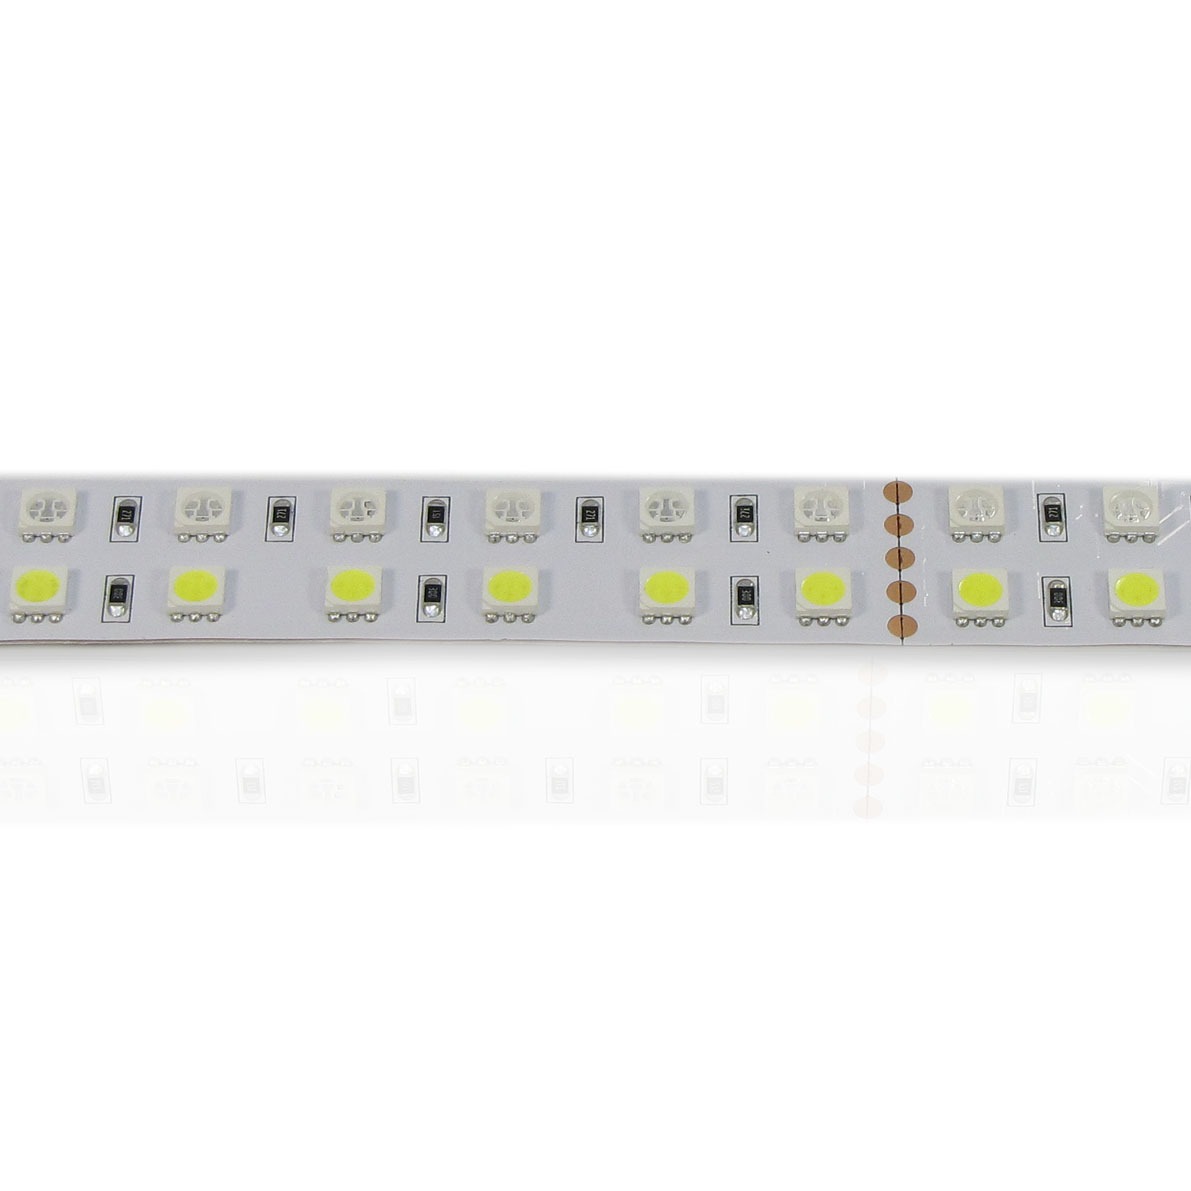 светодиодная лента standart pro class, 5050, 144 led/m, rgbw, 24v, ip33, артикул 31015